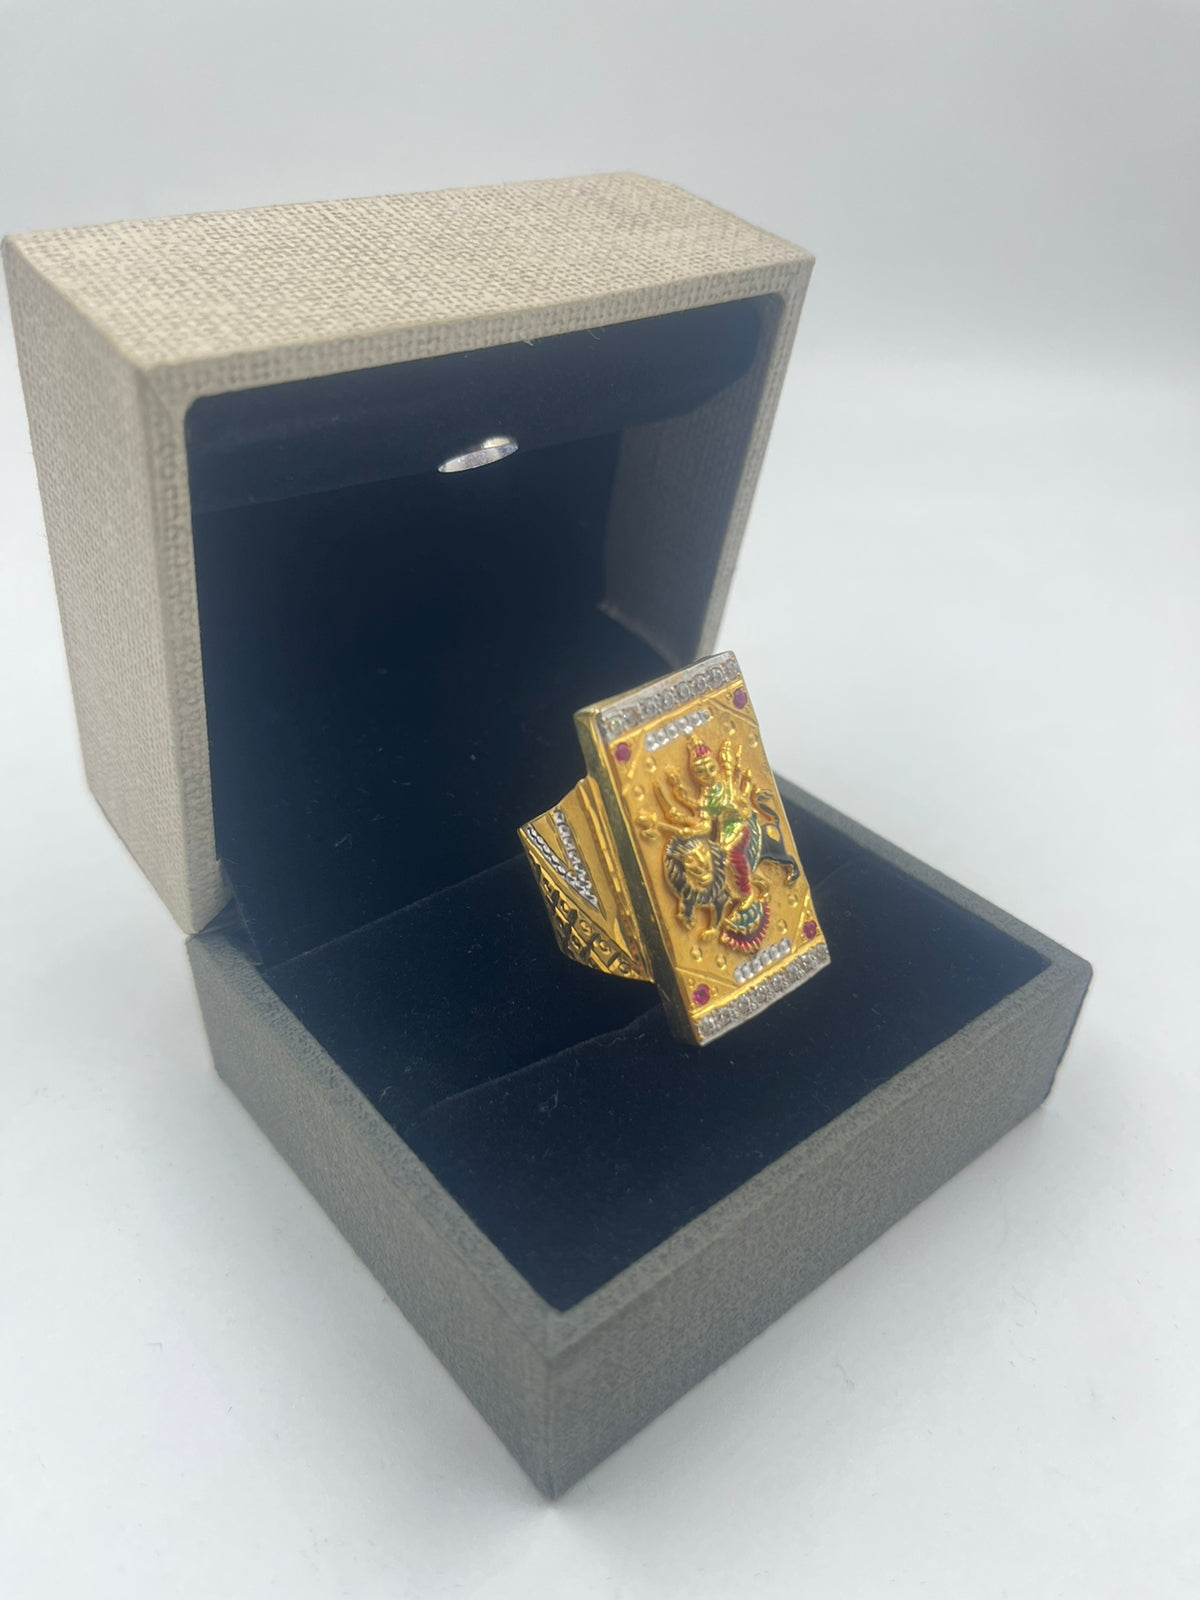 Men Ring Signet Ring Heliotrope 14 Carat 585 Gold 6,5 Gram Ring Size 62 |  eBay